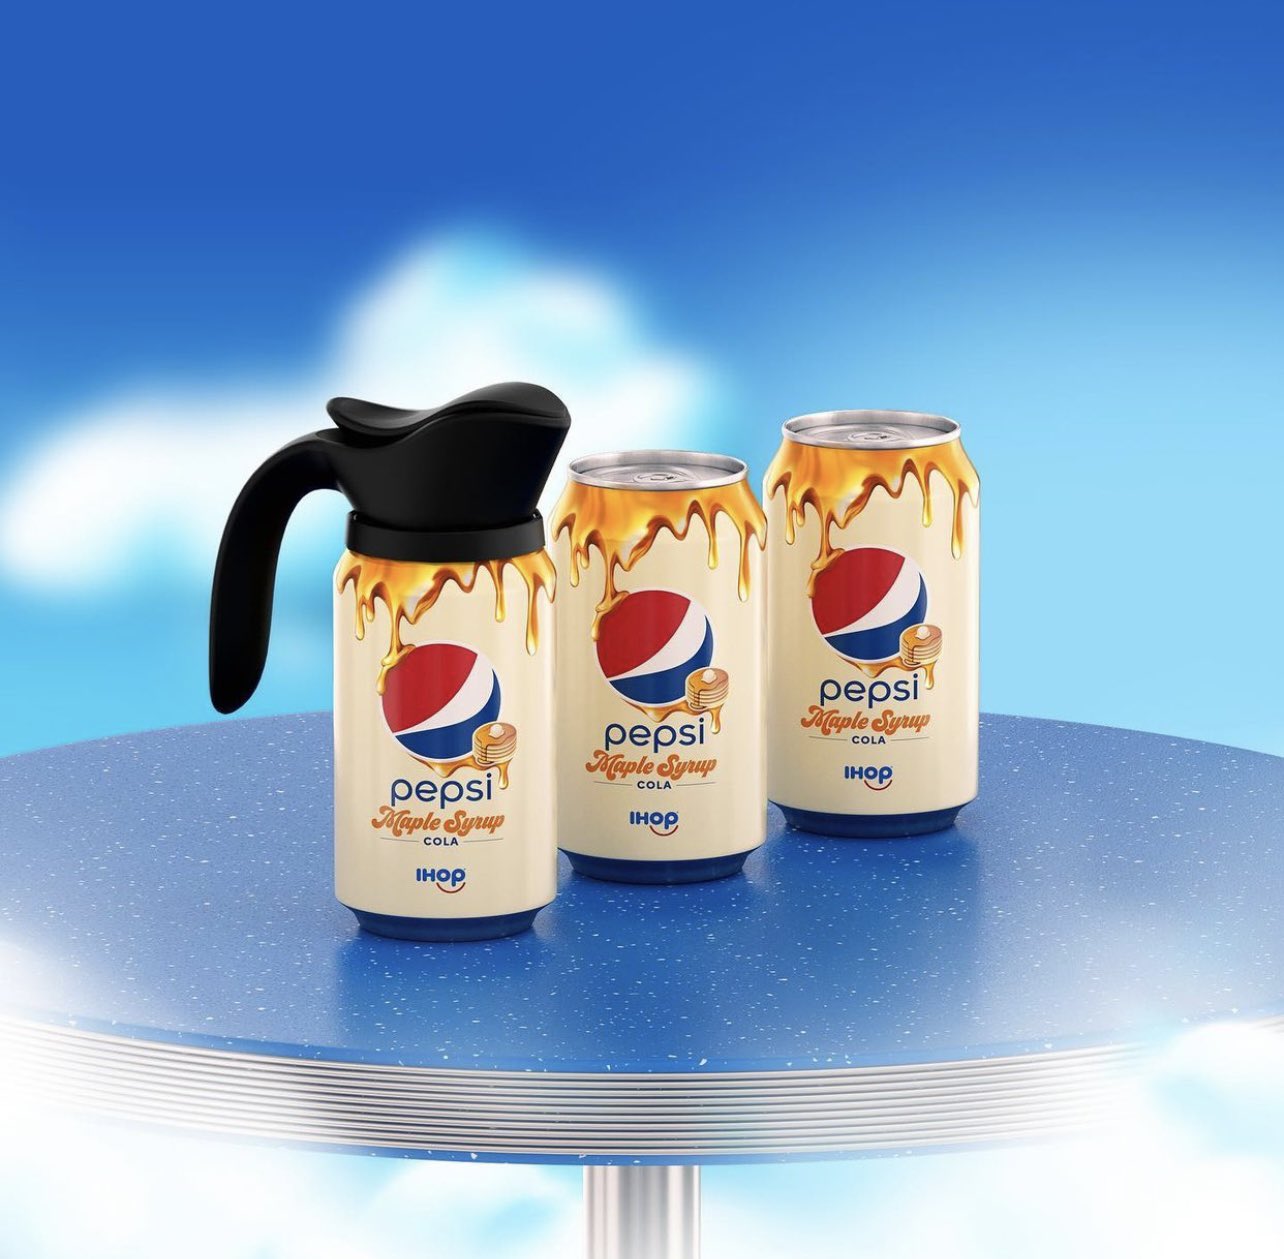 Pepsi, IHOP